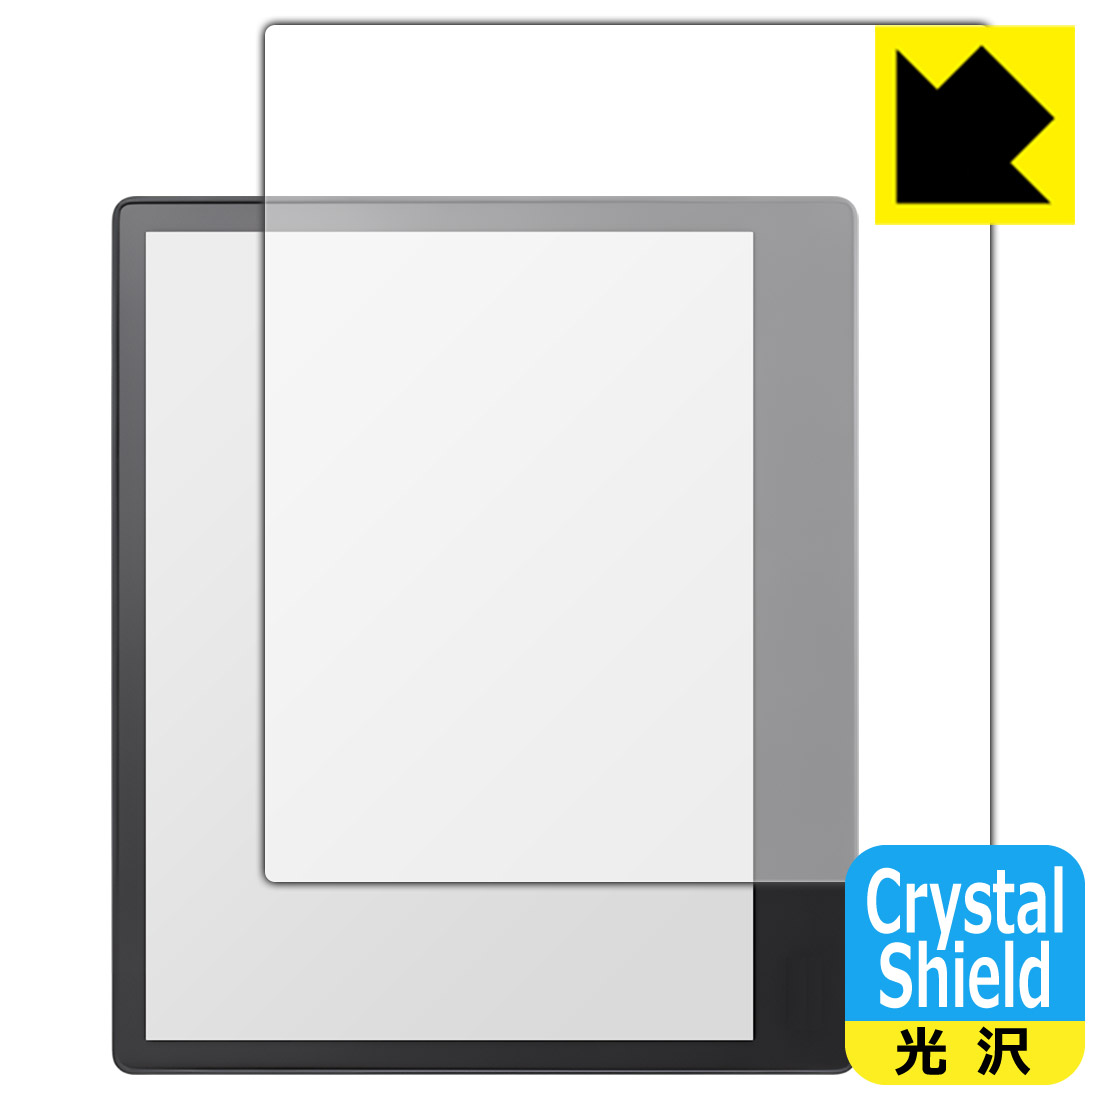 Crystal Shield【光沢】保護フィルム Kobo Elipsa 2E (3枚セット) 日本製 自社製造直販